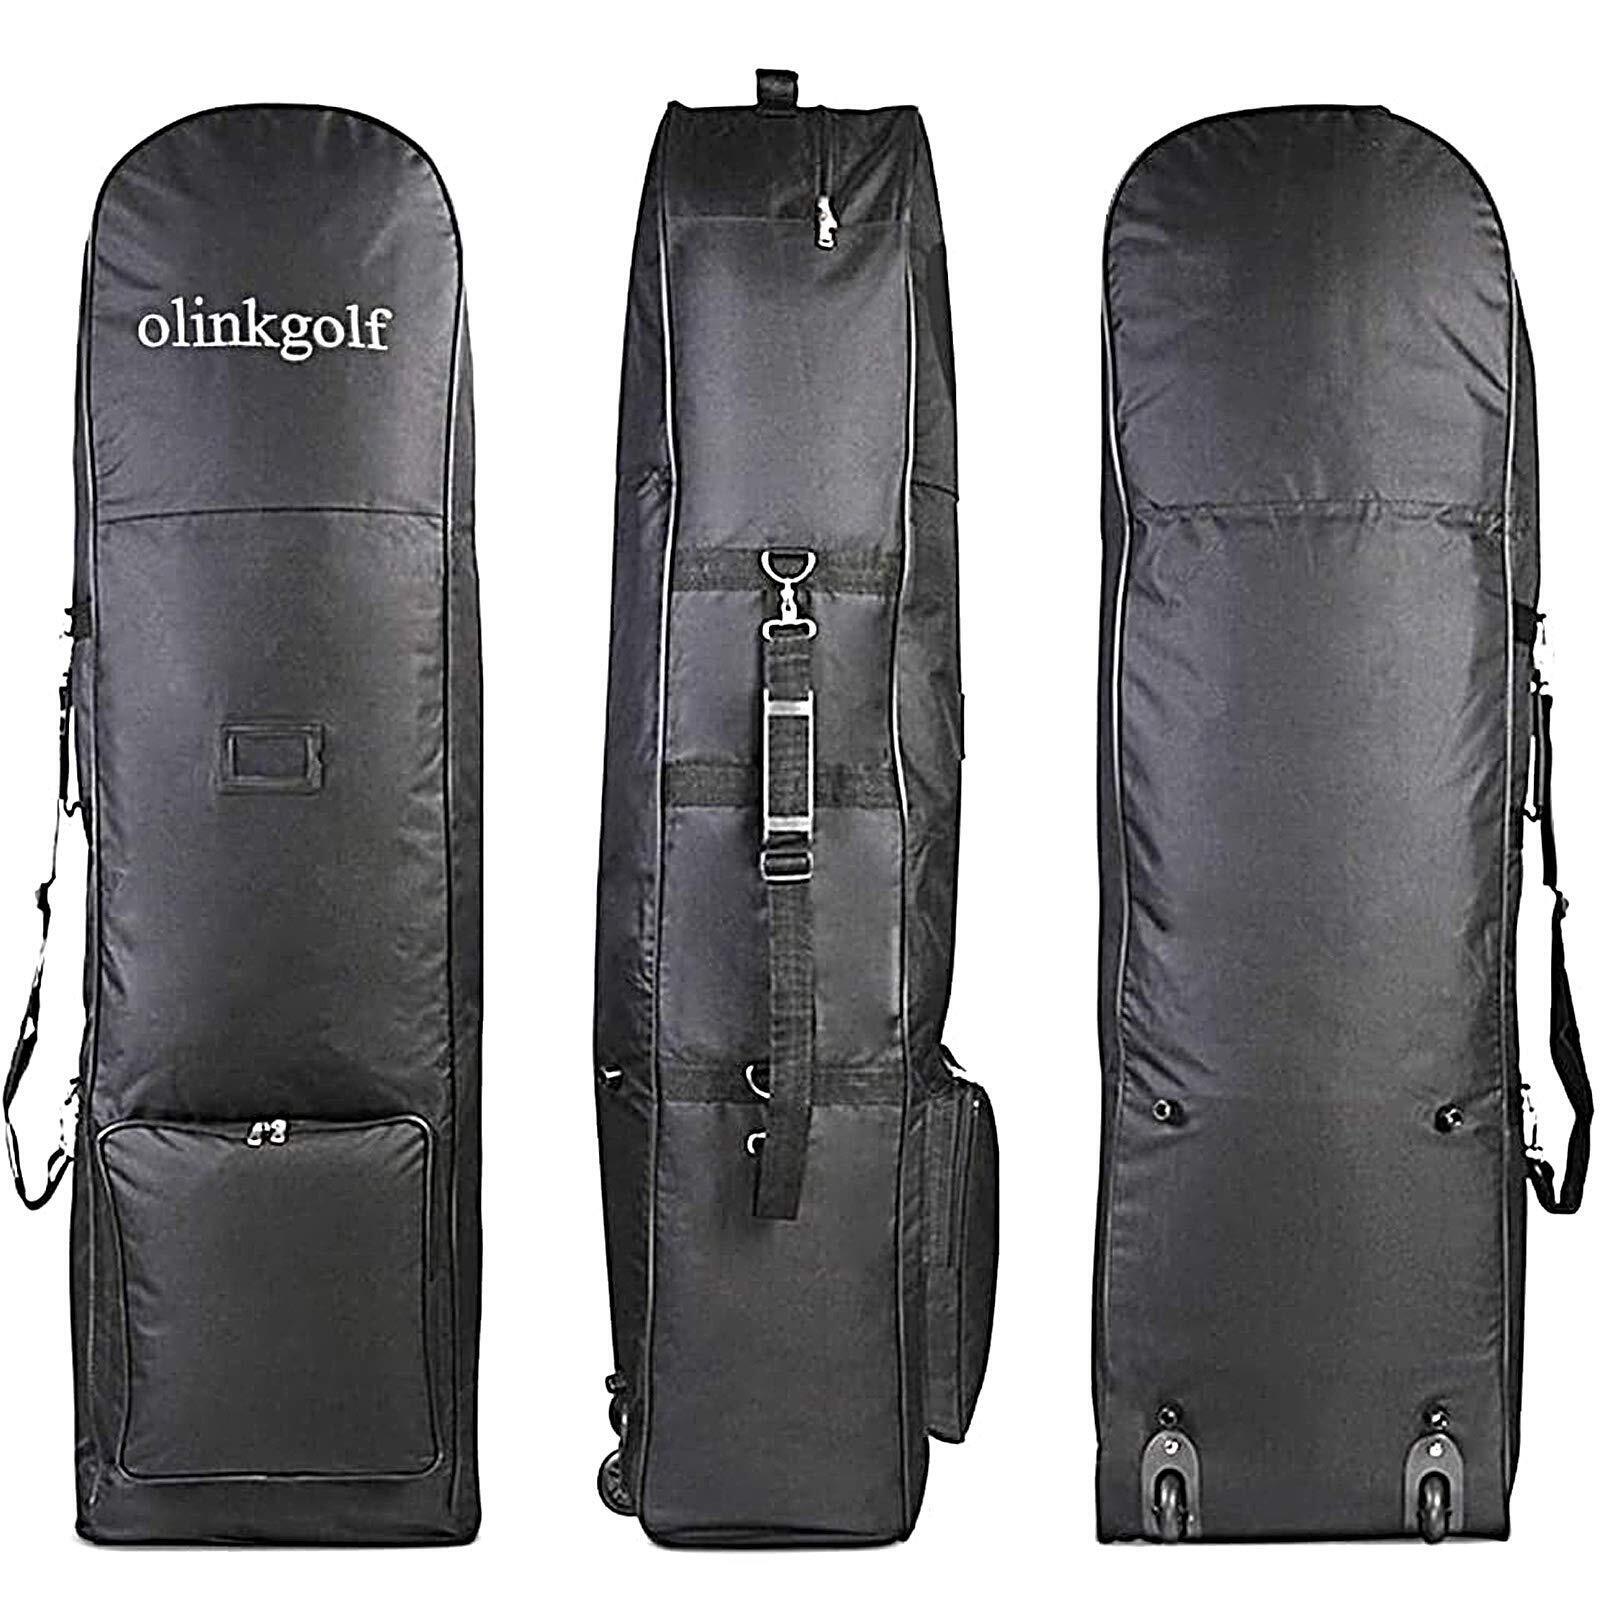 olinkgolf Golf Travel Cover with Big WheelsGolf Travel Bag Case for Golf Club...